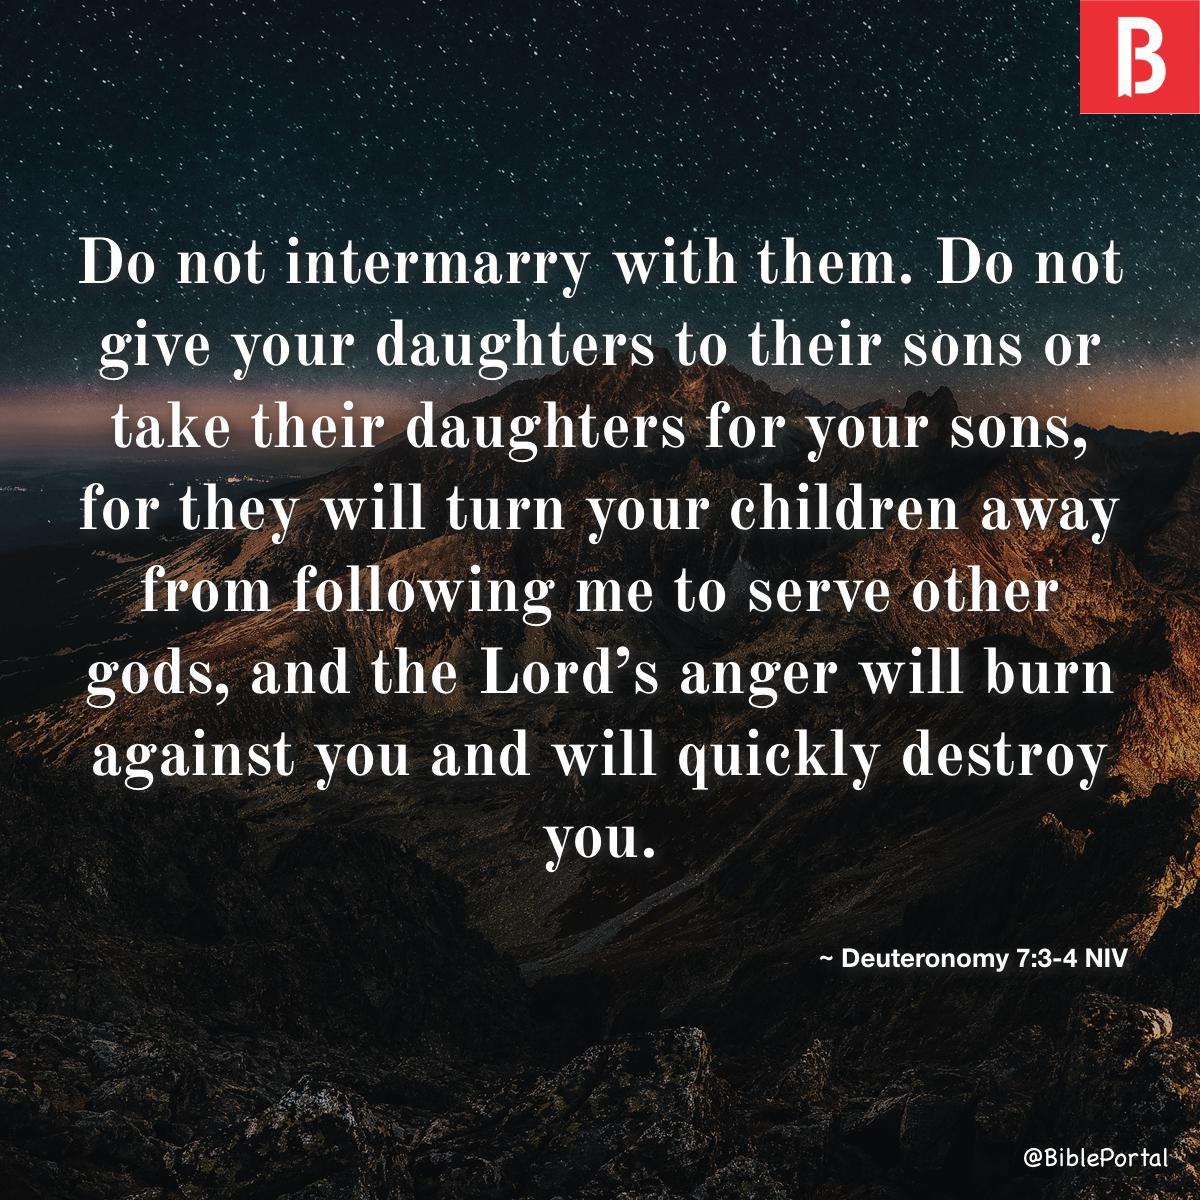 Deuteronomy 7:3-4 NIV